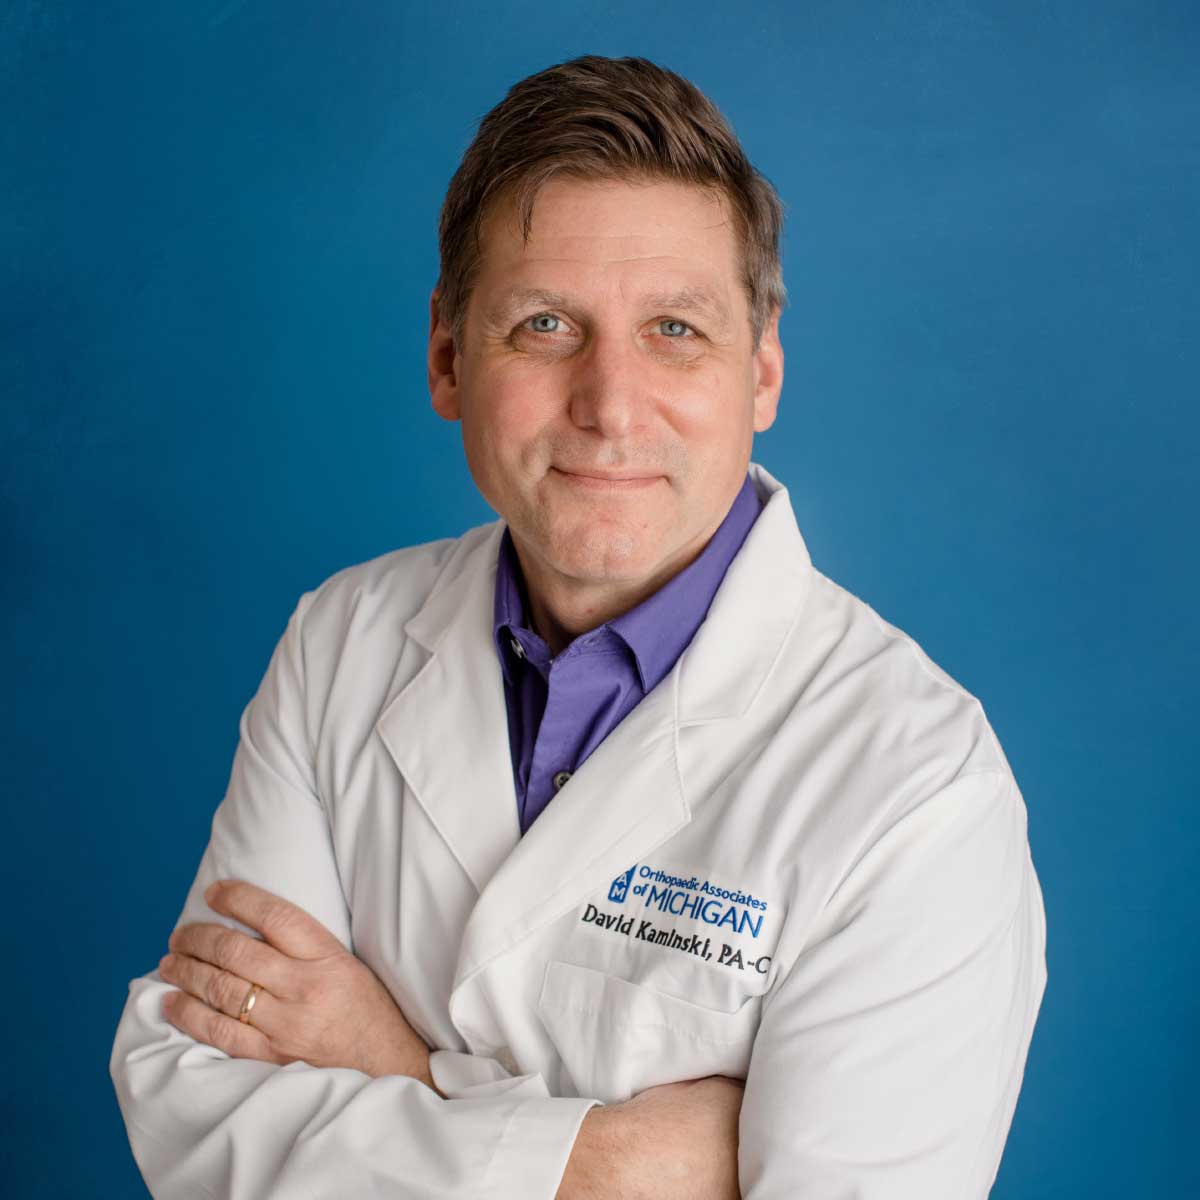 David Kaminski, PA-C - Orthopedic Surgeons in Greater Grand Rapids, MI